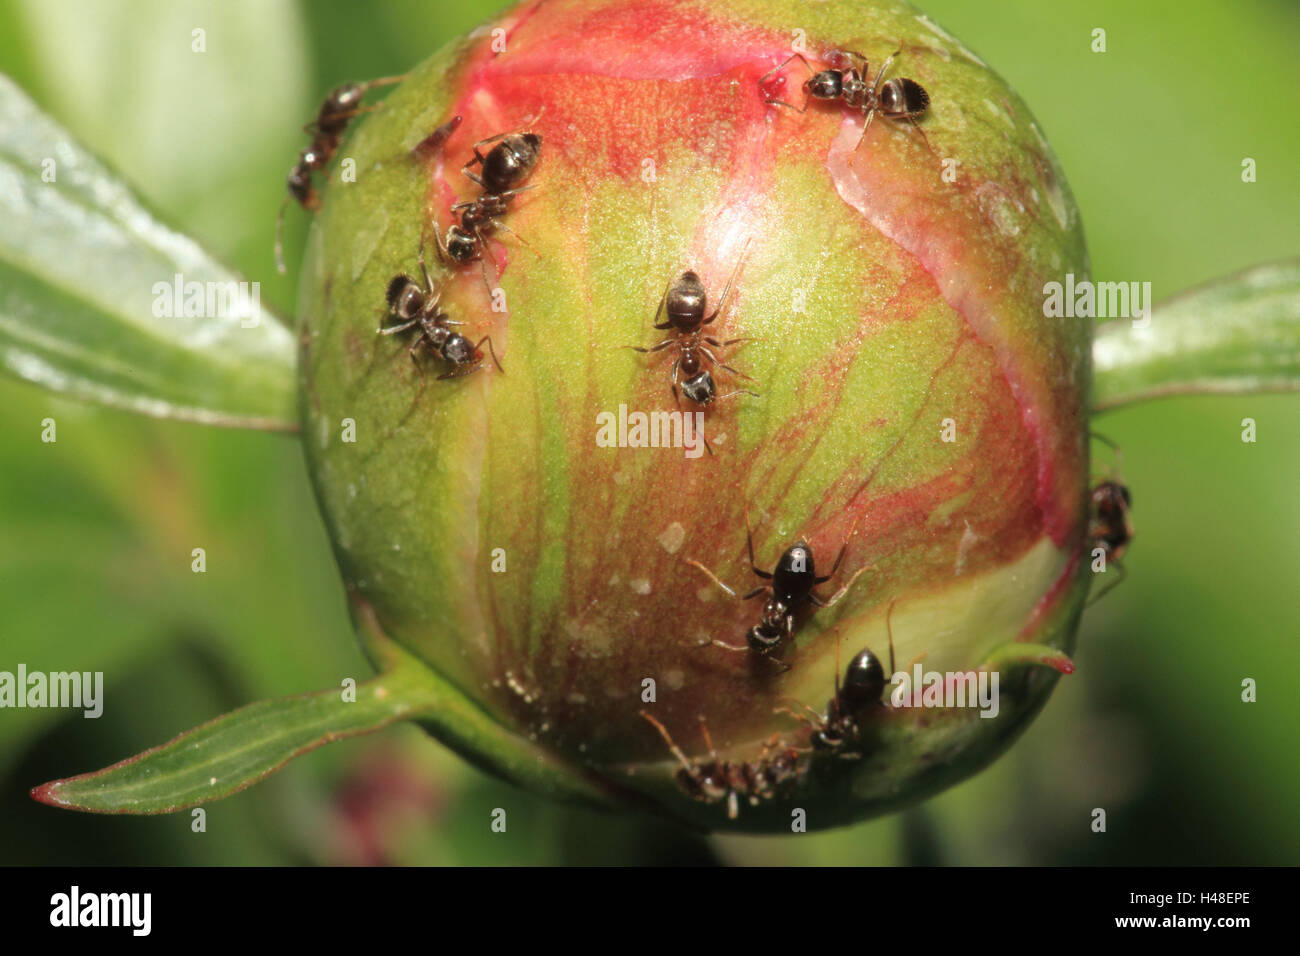 Route de fourmis, Bud, format paysage, les animaux, les fourmis, insectes, animaux sauvages, fleurs, pivoine, pivoine, bud Banque D'Images